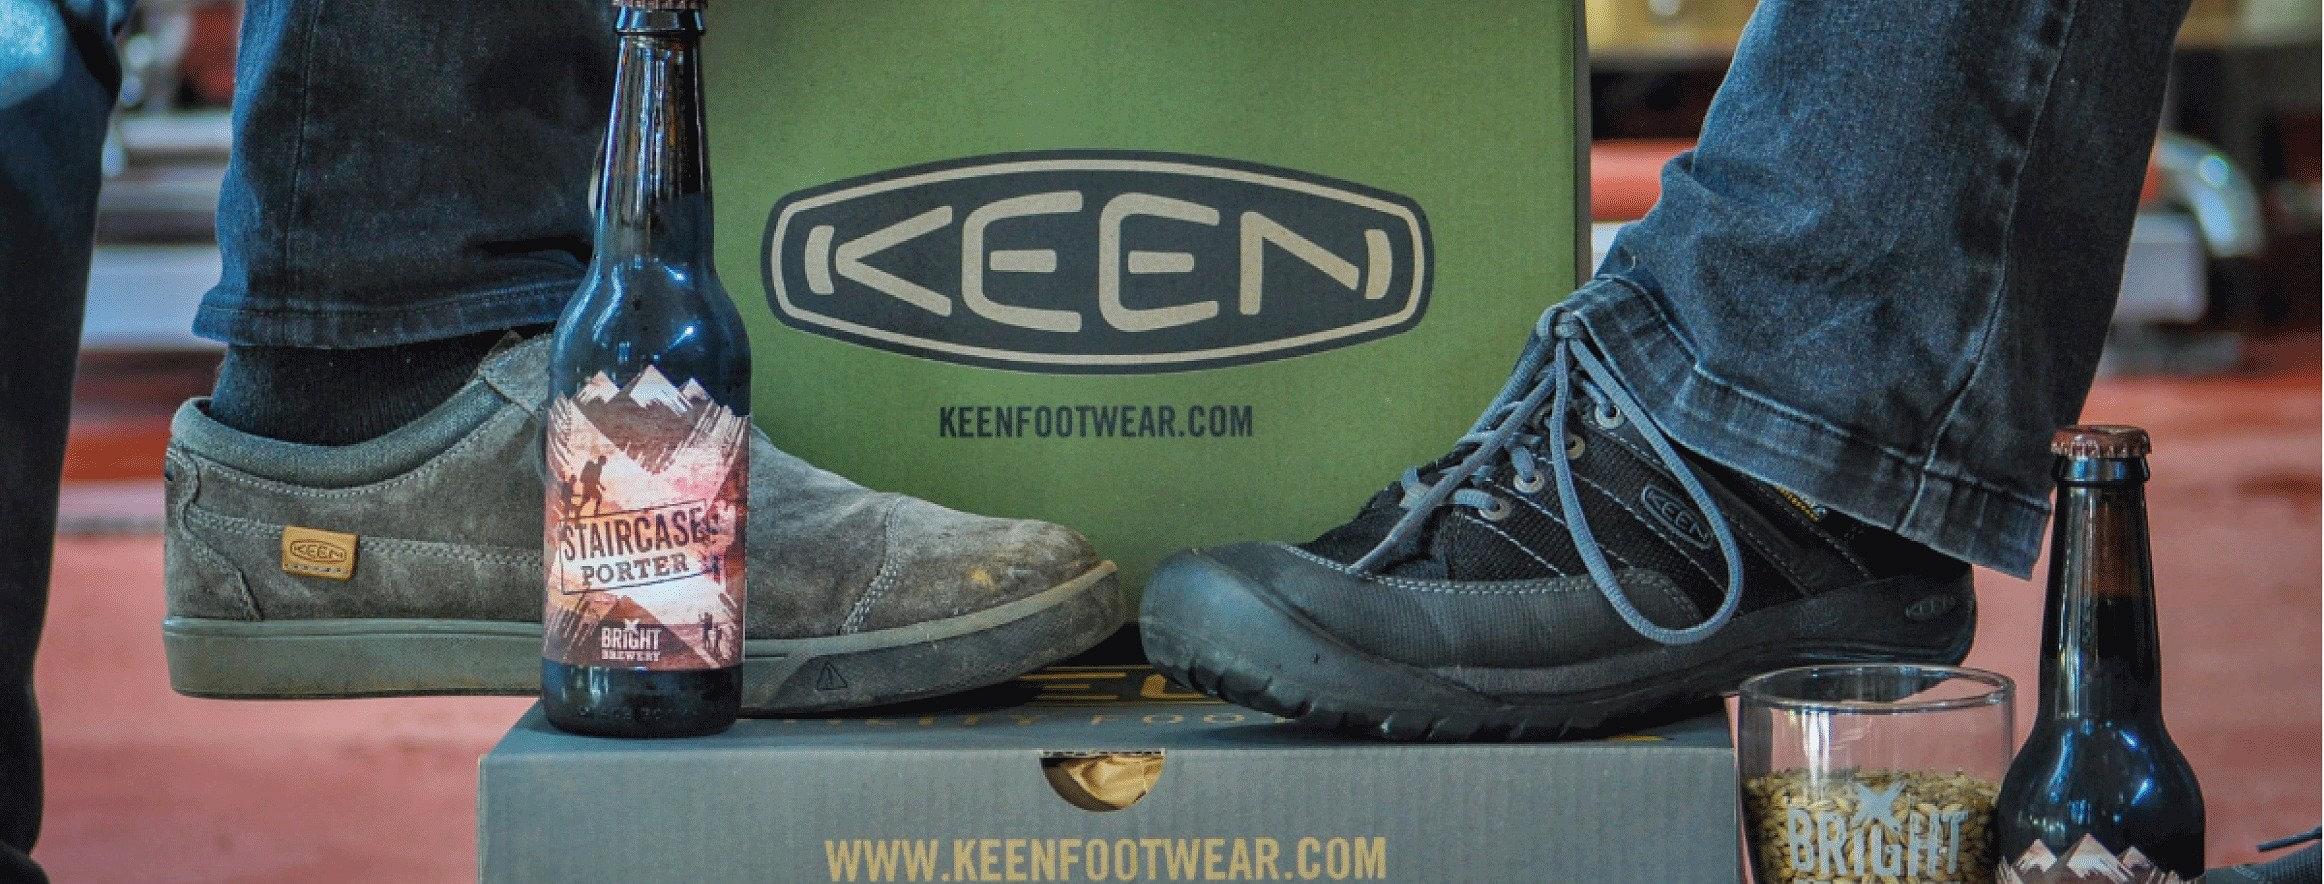 Keen Footwear Coupons \u0026 Promo Codes: Up 